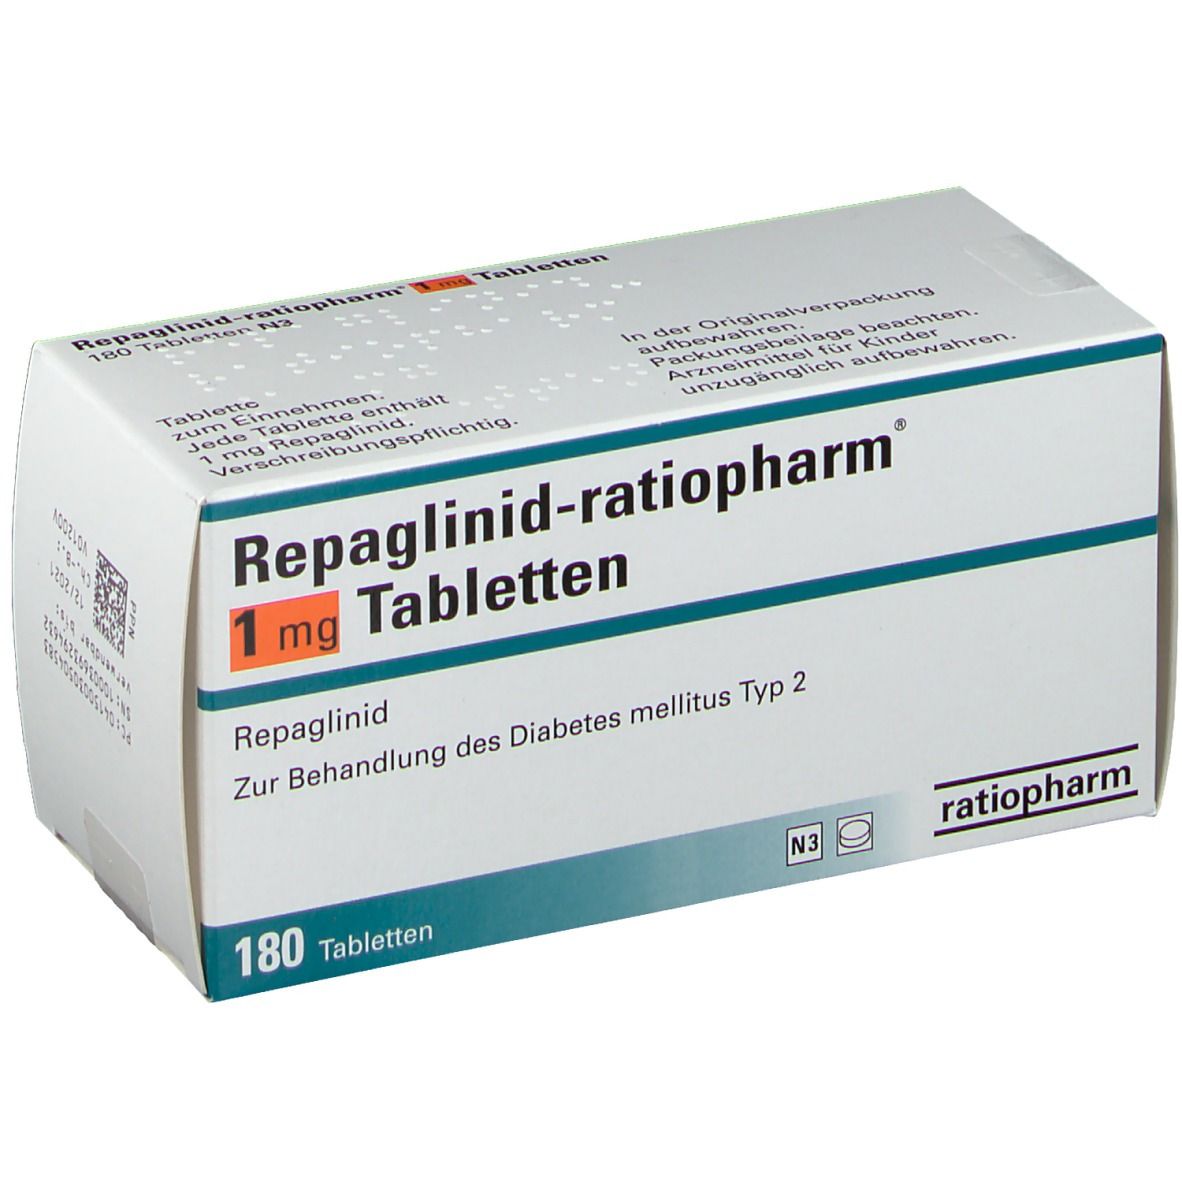 Repaglinid-ratiopharm® 1 mg